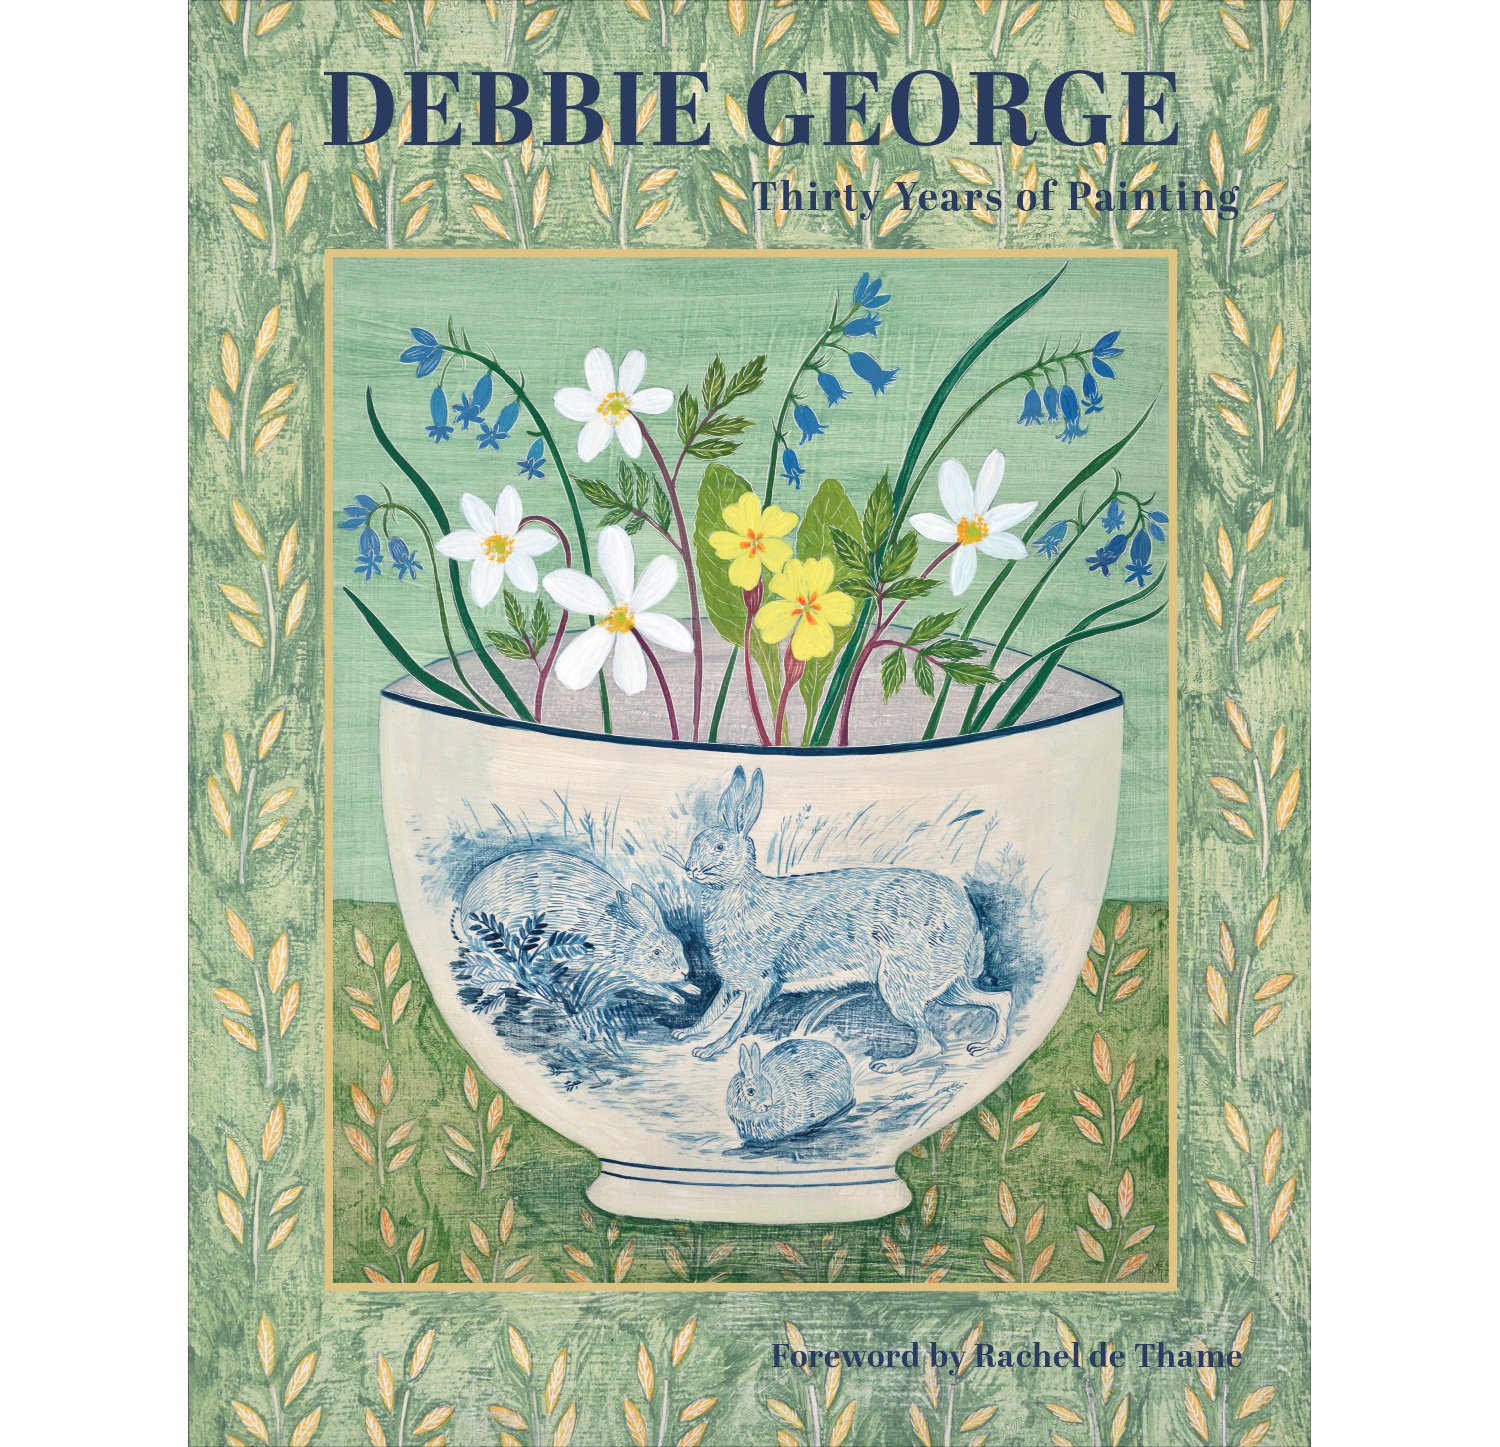 Debbie George: Thirty Years of Painting by Debbie George